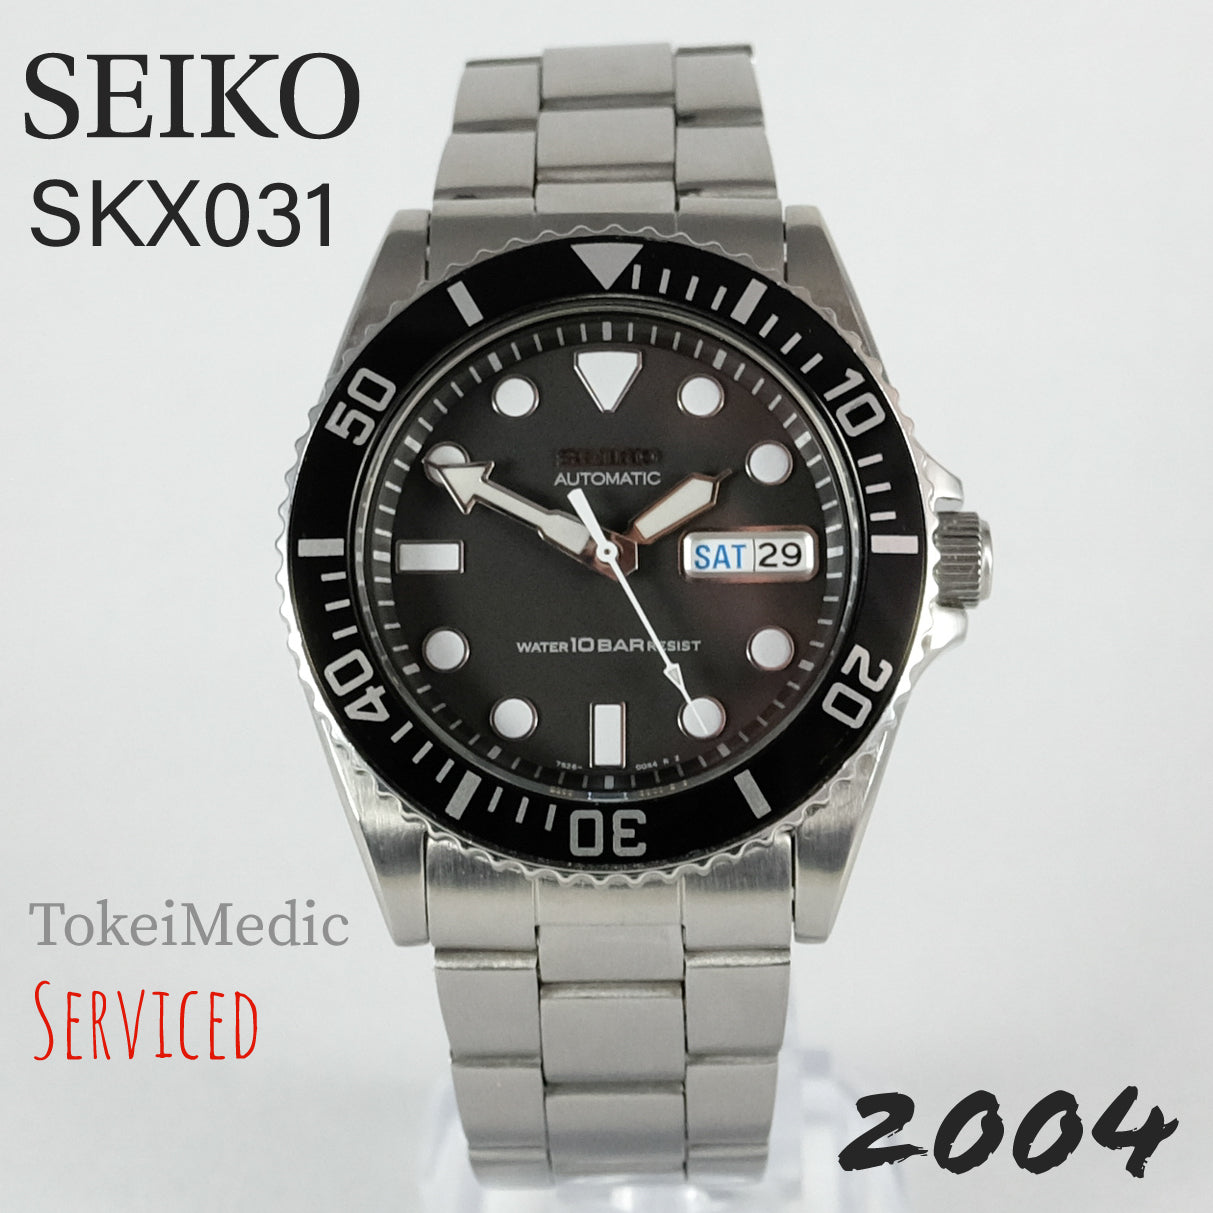 2004 Seiko SKX031 7S26-0040